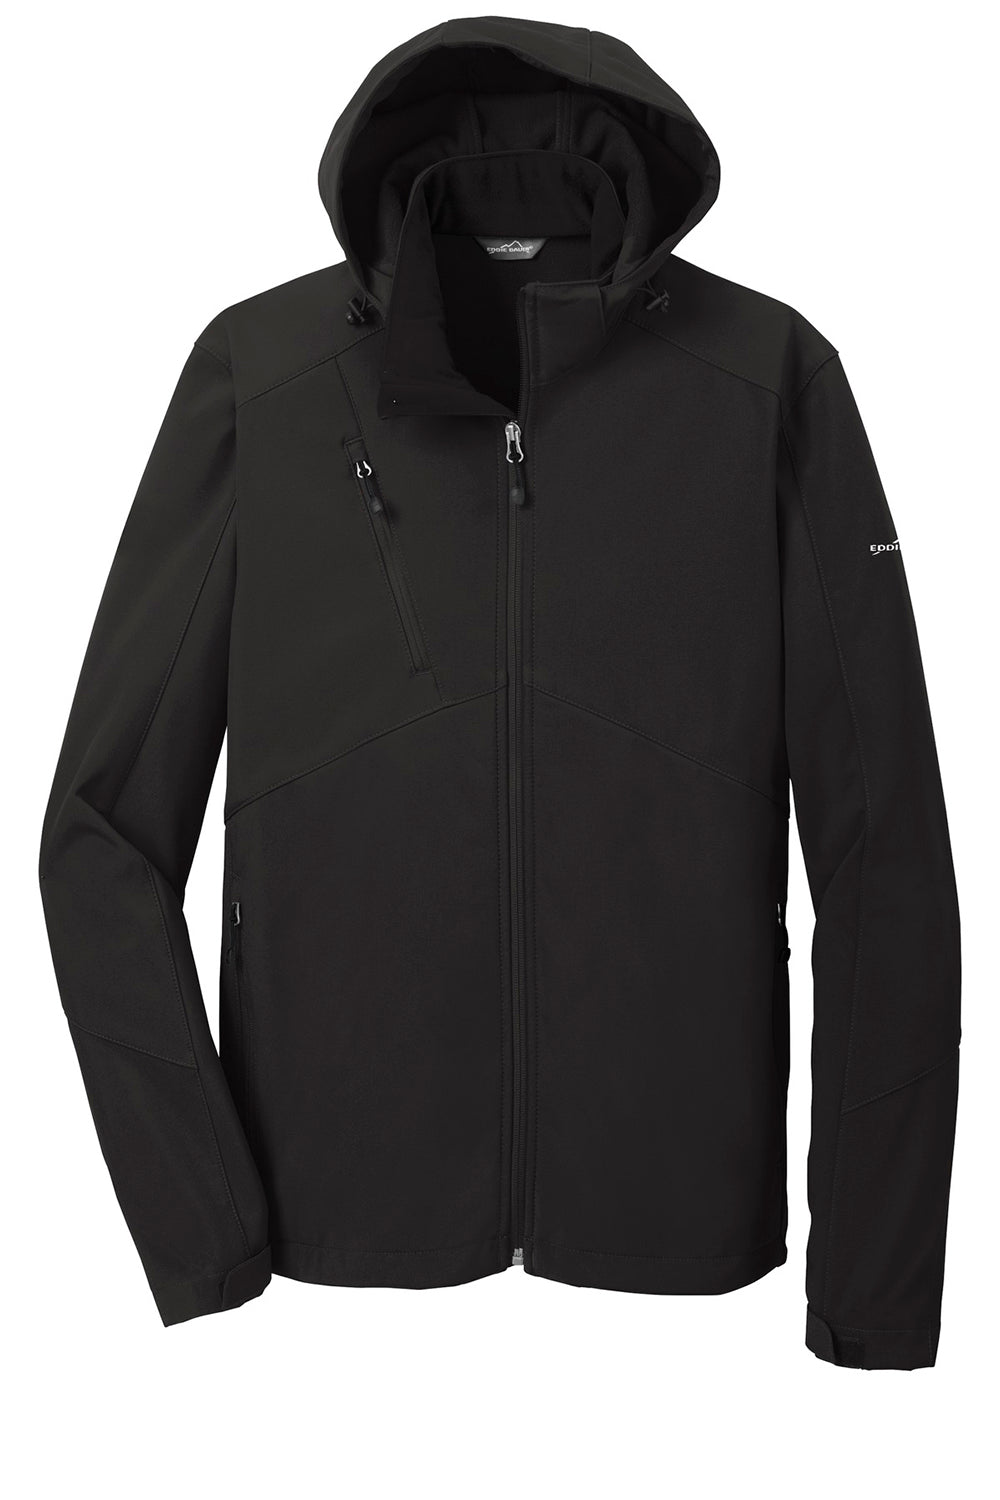 Eddie Bauer EB536 Mens Water Resistant Full Zip Hooded Jacket Black Flat Front